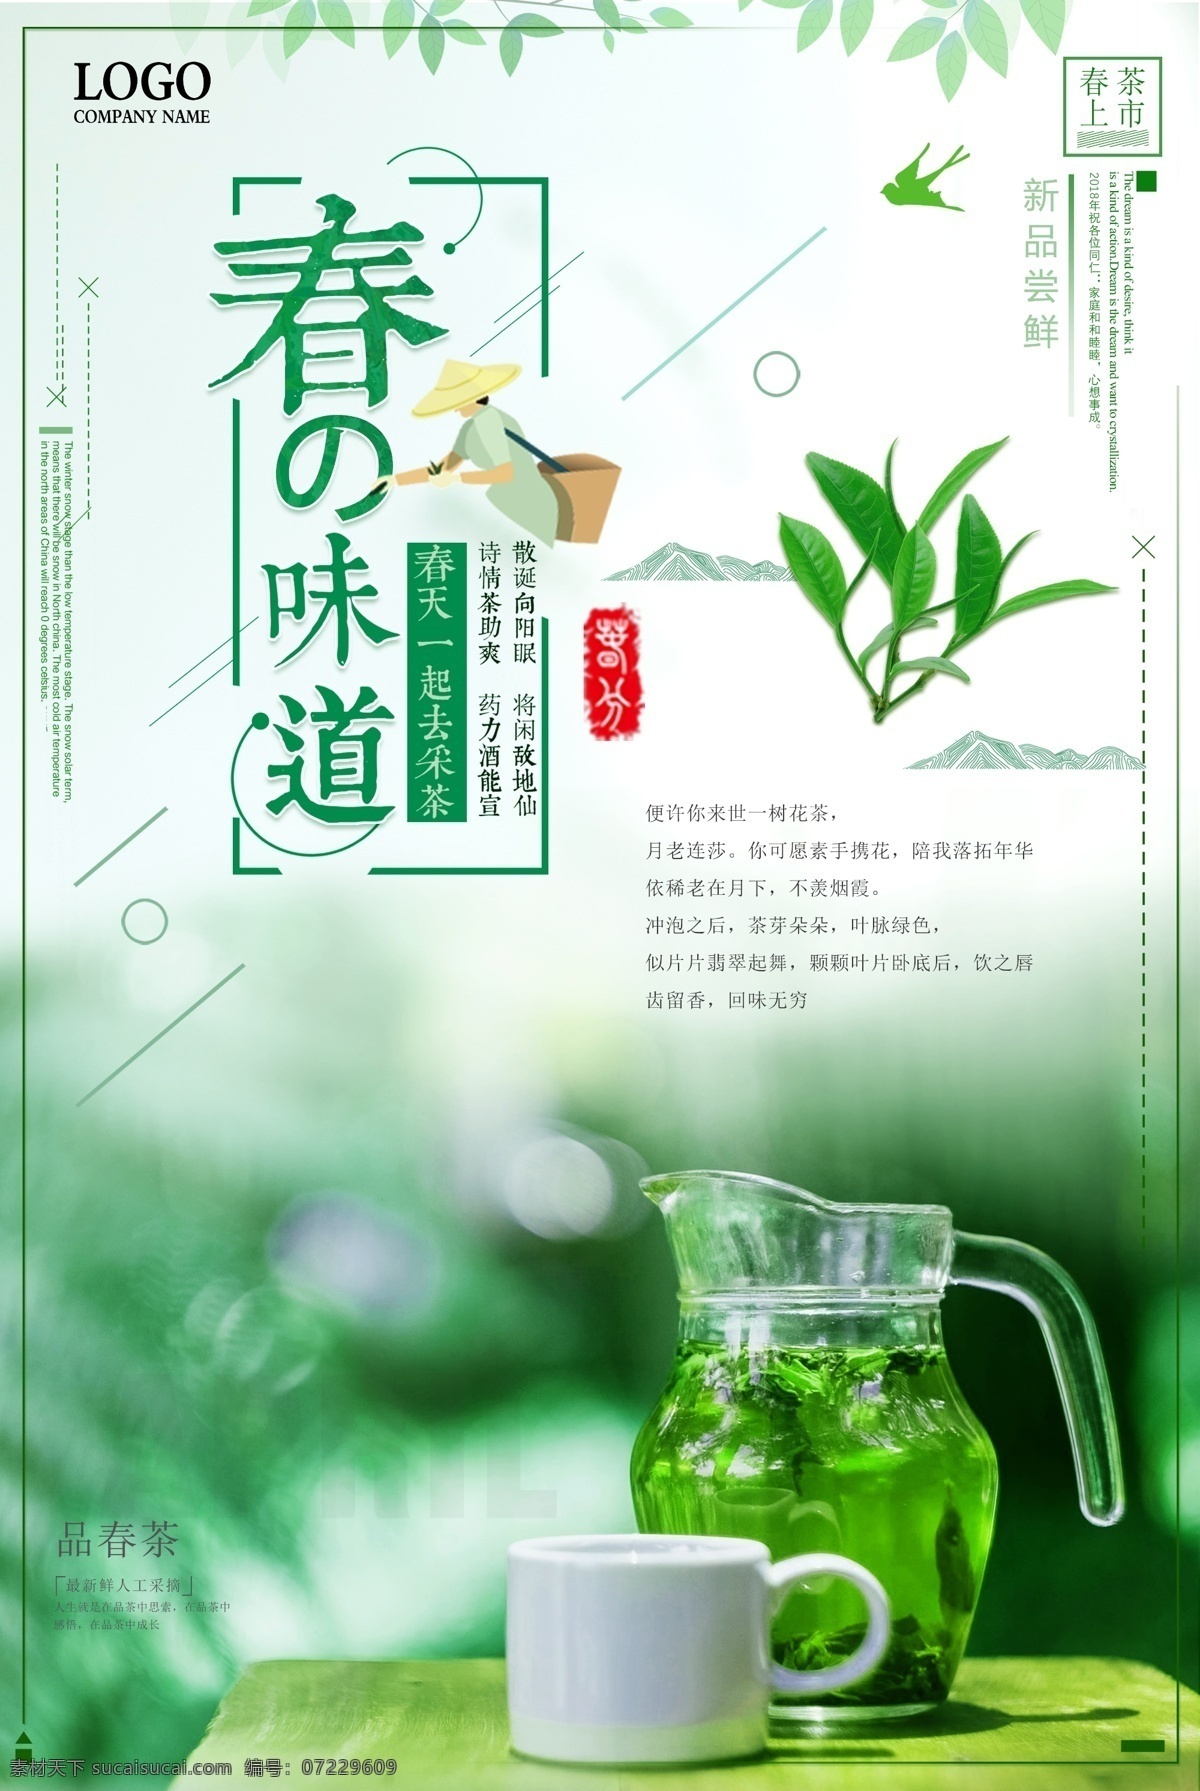 清新 自然 活力 春茶 节多 海报 小清新 绿色 鲜艳 清新自然 多用 春茶节 自然清新 清新活力